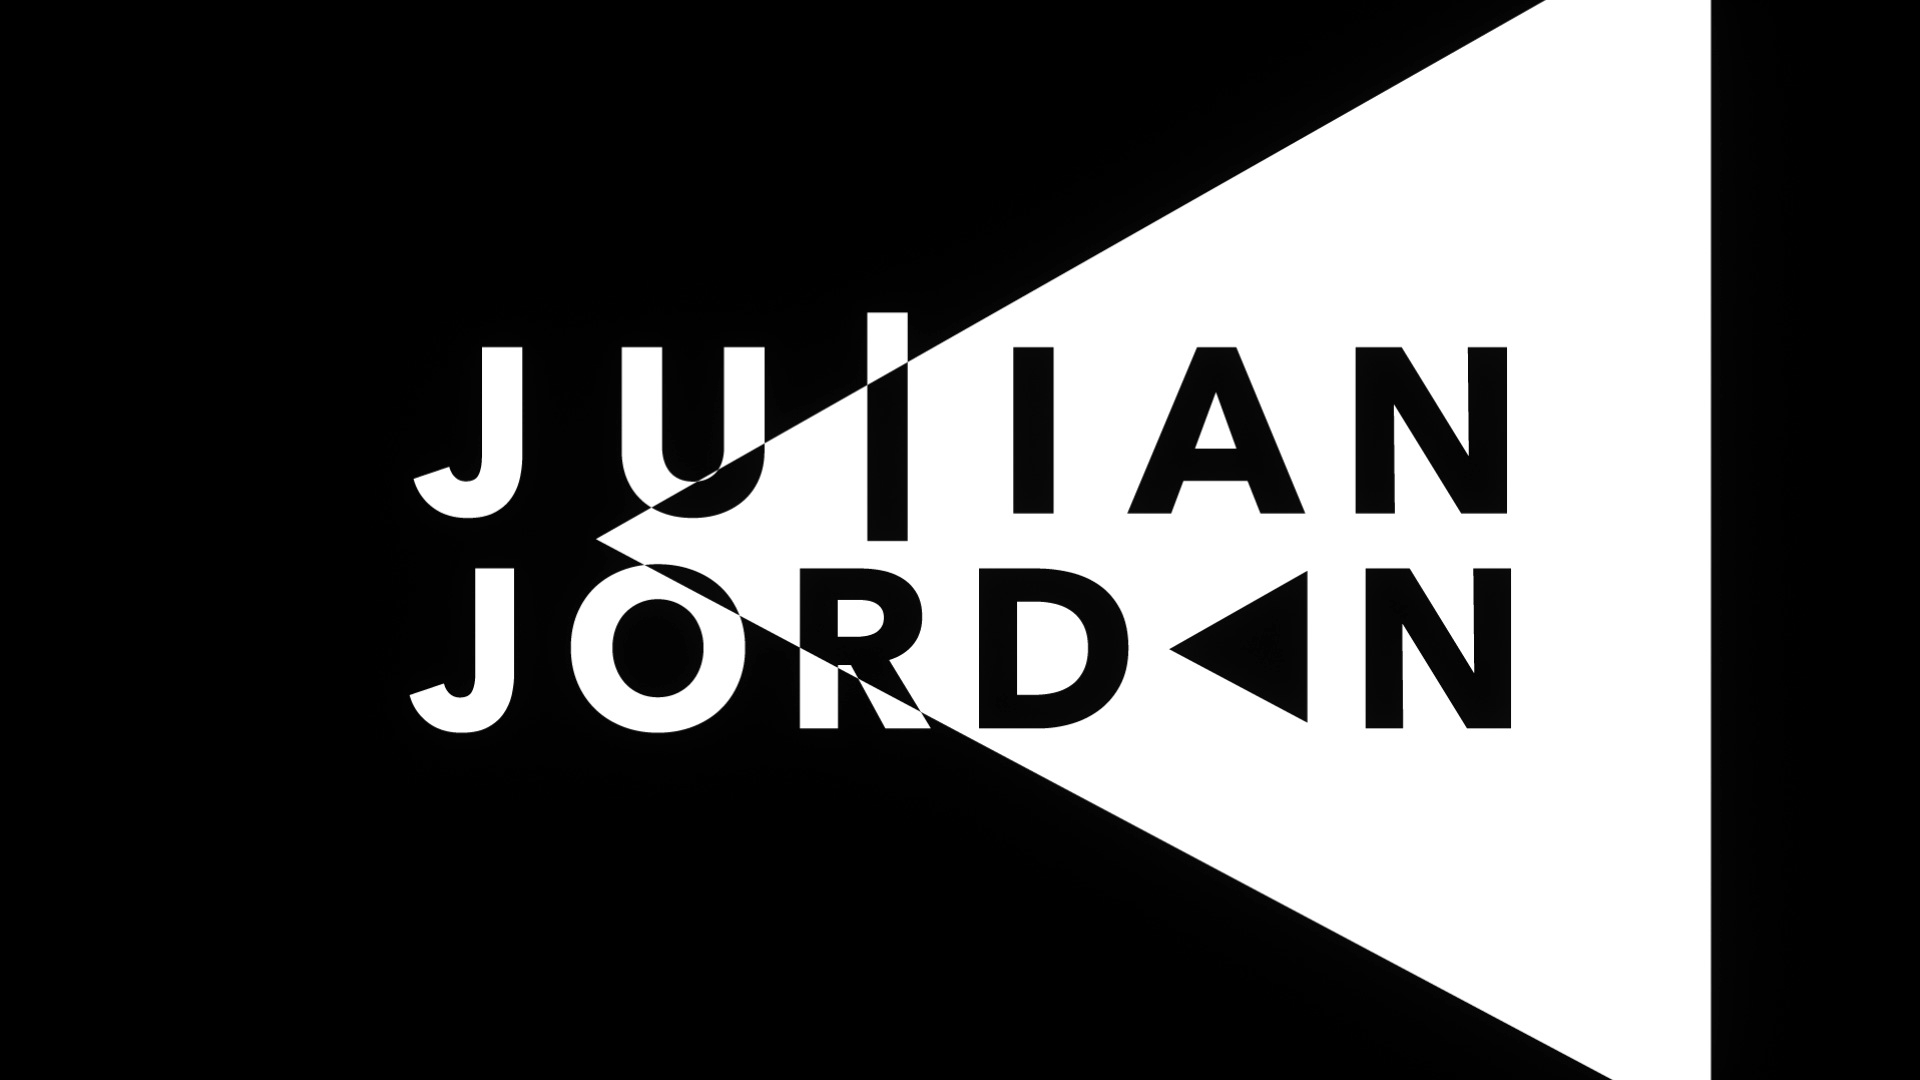 Julian Jordan Wallpapers